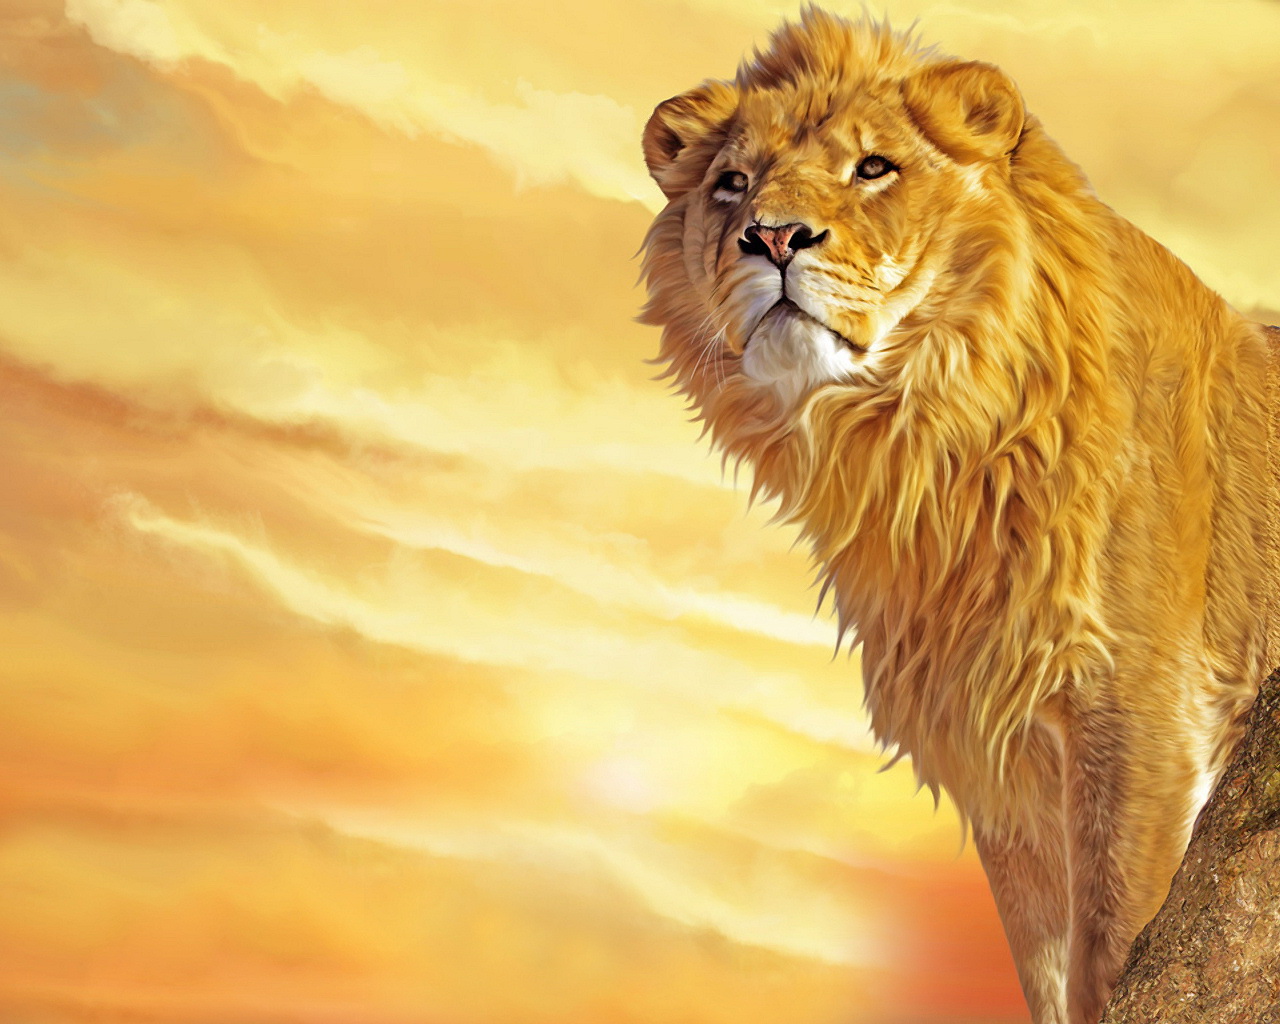 Những hình nền về sư tử đã sẵn sàng để trang trí cho màn hình của bạn. Với những hình ảnh chất lượng cao, bạn sẽ được tận hưởng những khoảnh khắc đẹp của vật nuôi hoang dã này. Hãy tải những hình nền sư tử ngay hôm nay.